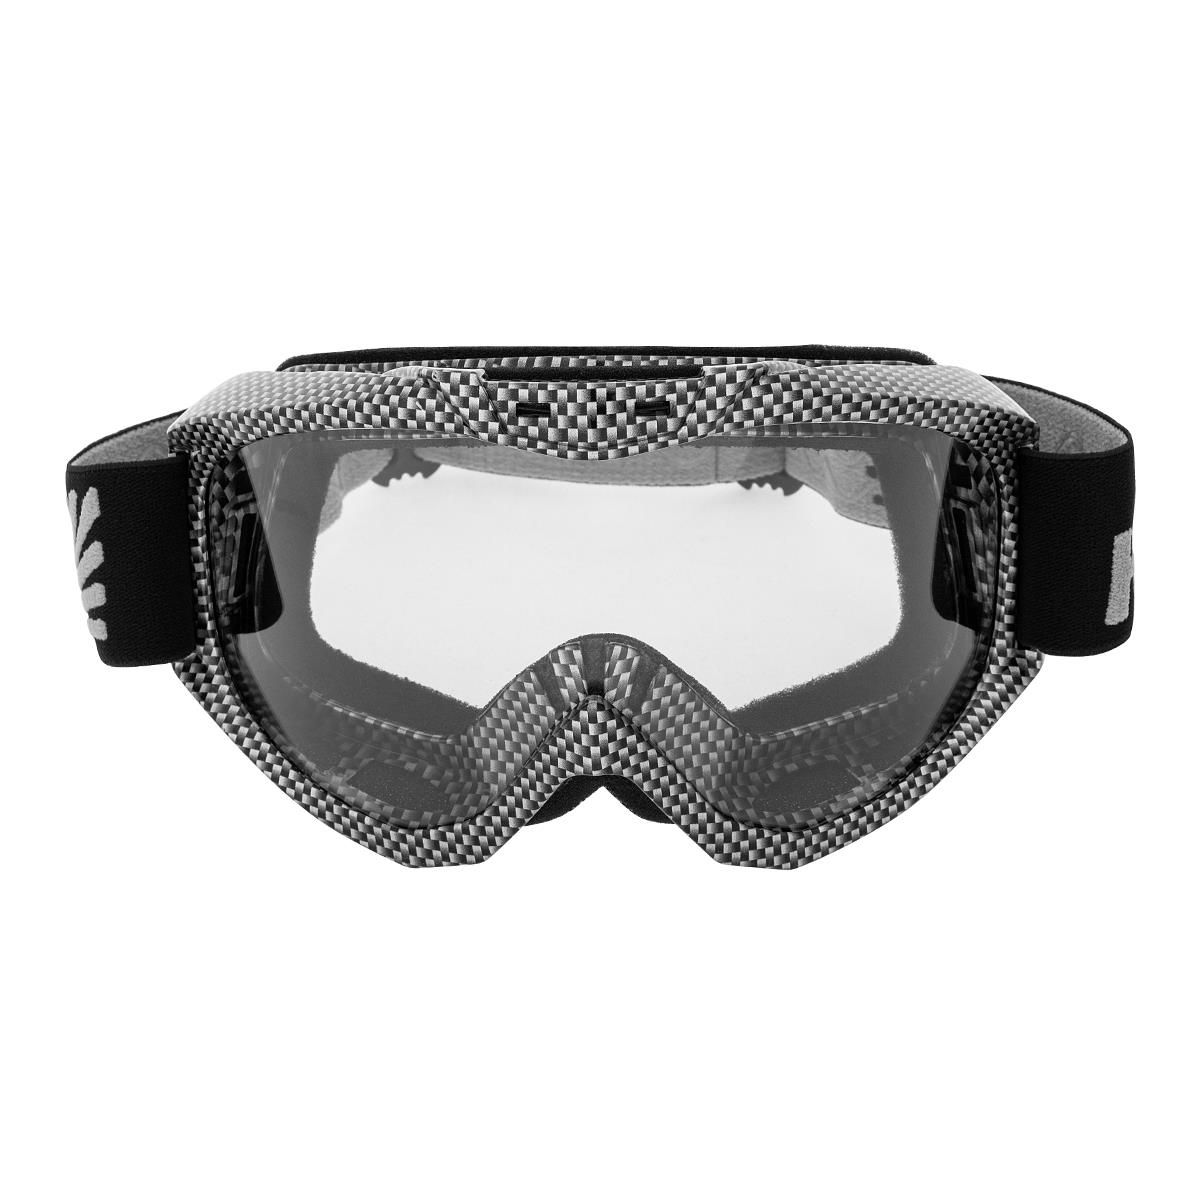 Очки горнолыжные HS-MT-001-C Helios очки маска для езды на мототехнике разборные визор затемненный